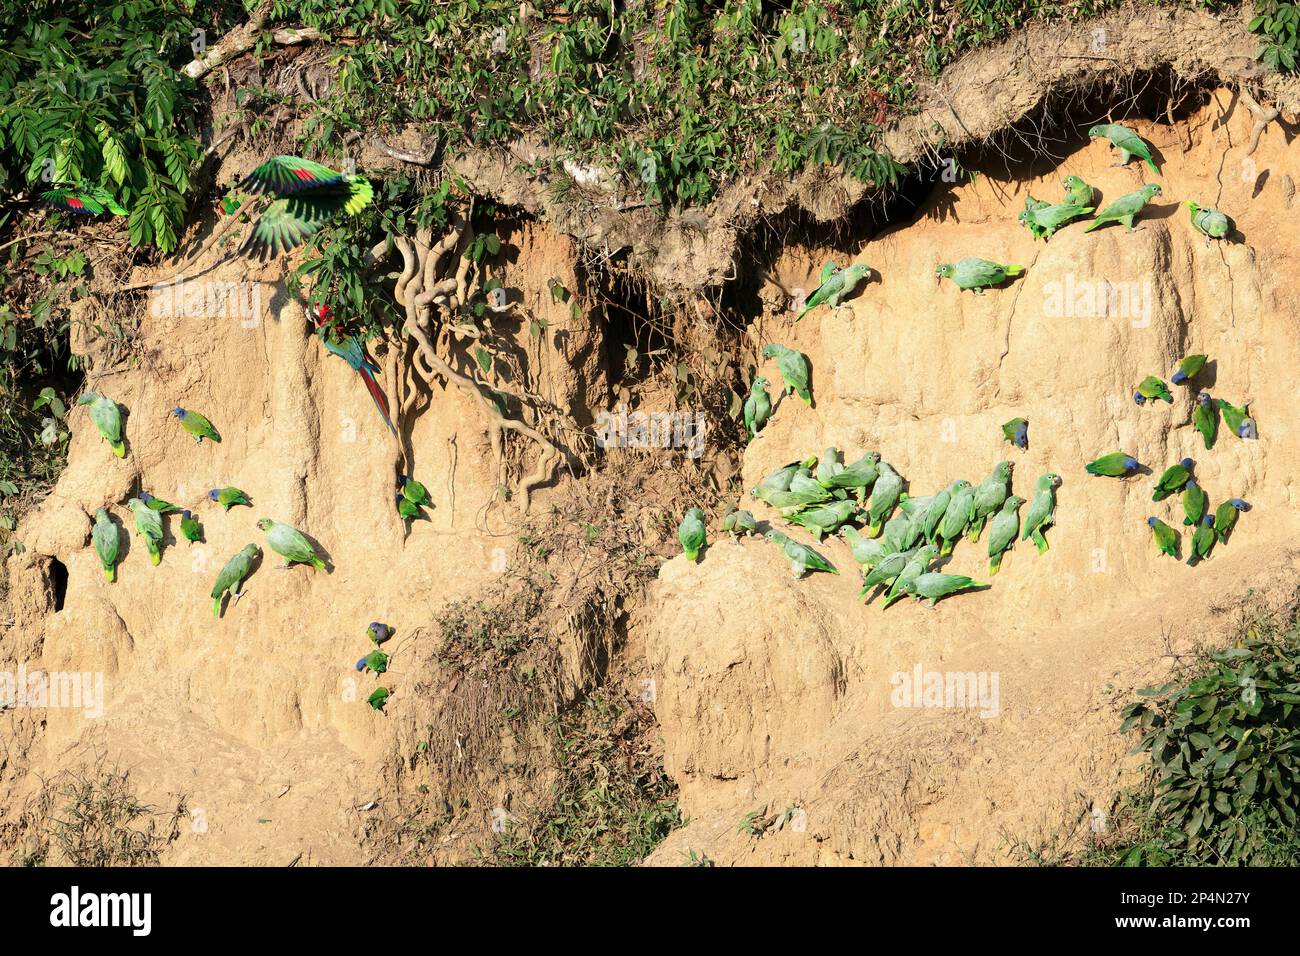 Andensittiche (Bolborhynchus orbygnesius) und Blaukopfpapageien (Pionus menstruus) bei Clay Lack, Manu-Nationalpark, peruanischer Amazonas, Peru Stockfoto